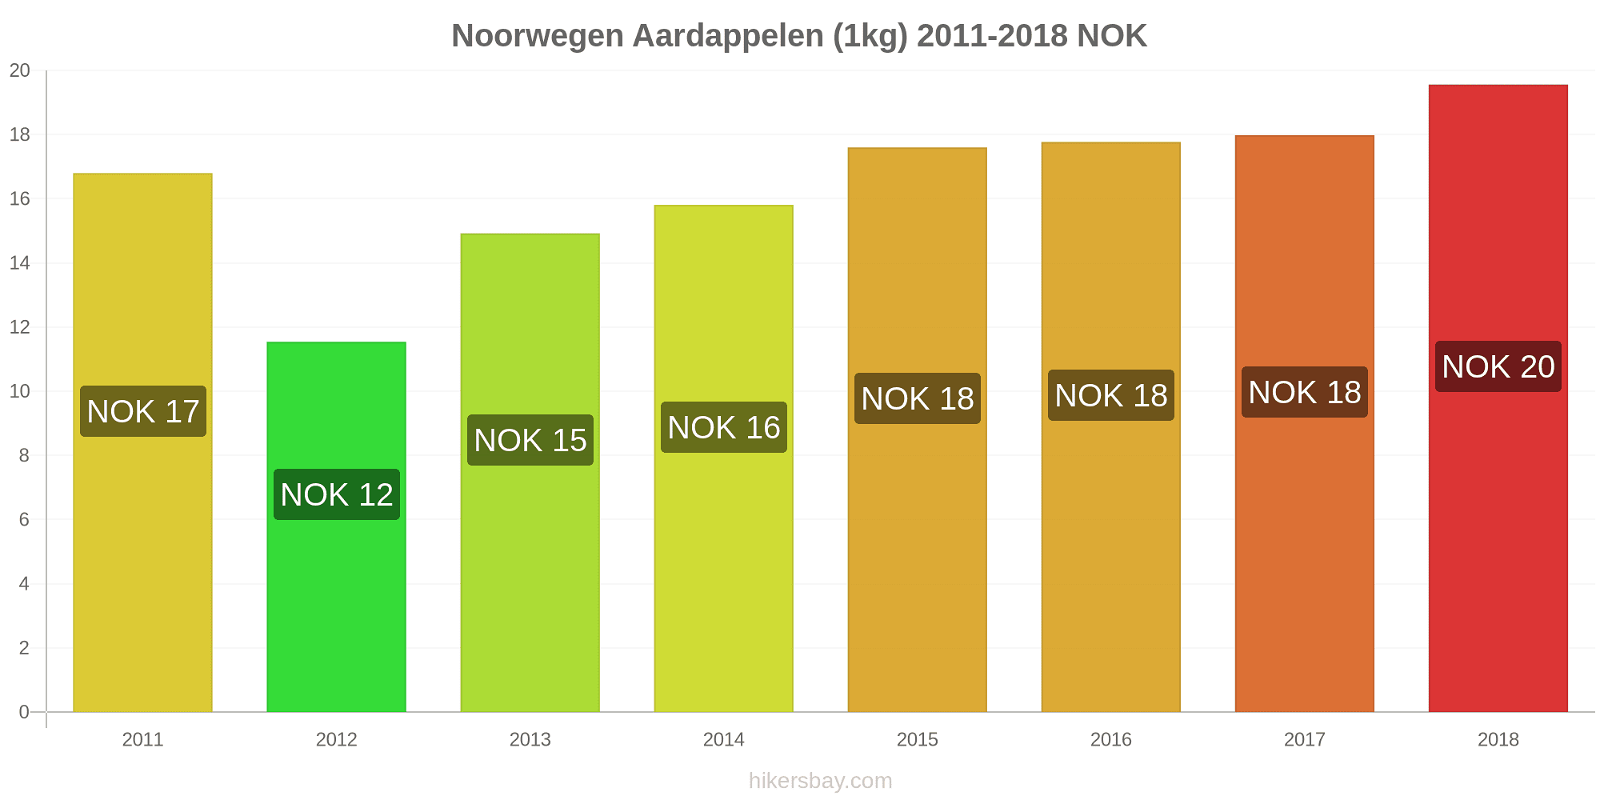 Noorwegen prijswijzigingen Aardappelen (1kg) hikersbay.com